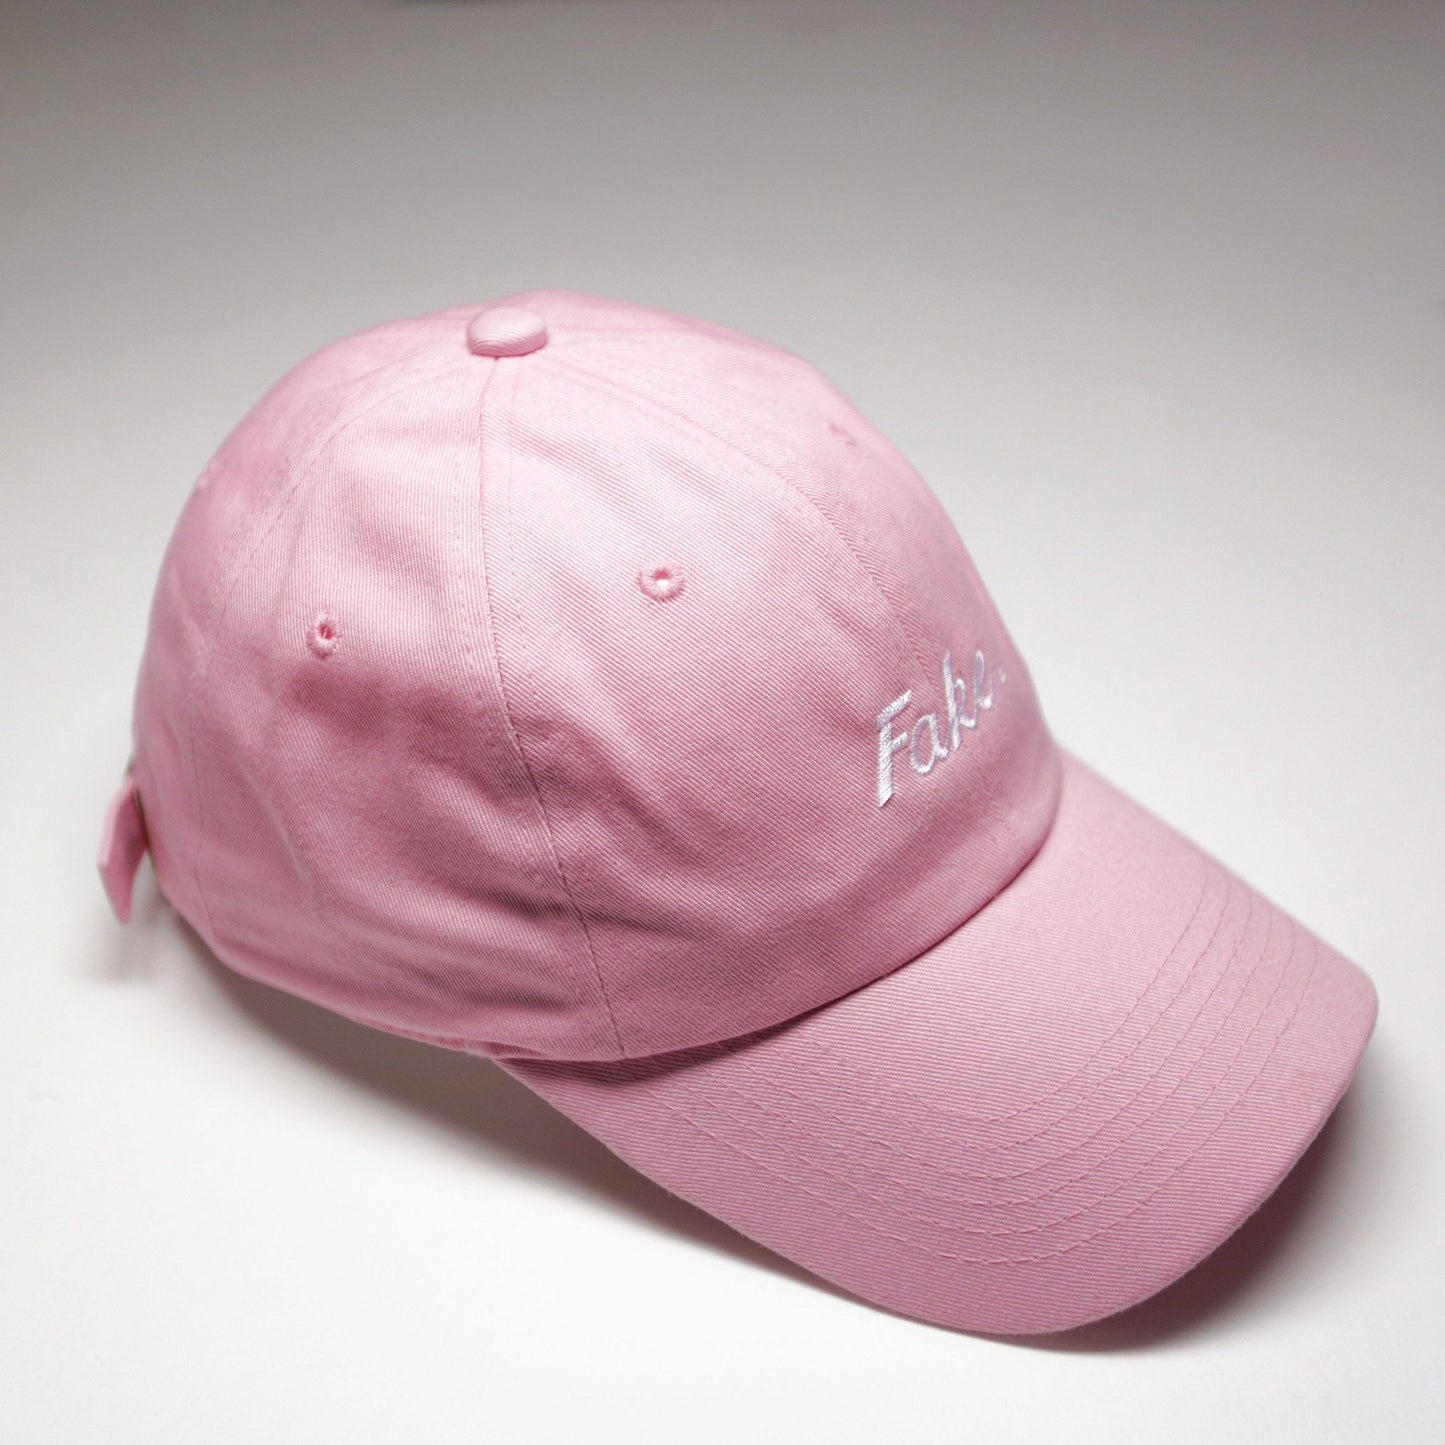 Pink "Fake" Cap - SeasonCaps  - Dad Cap 